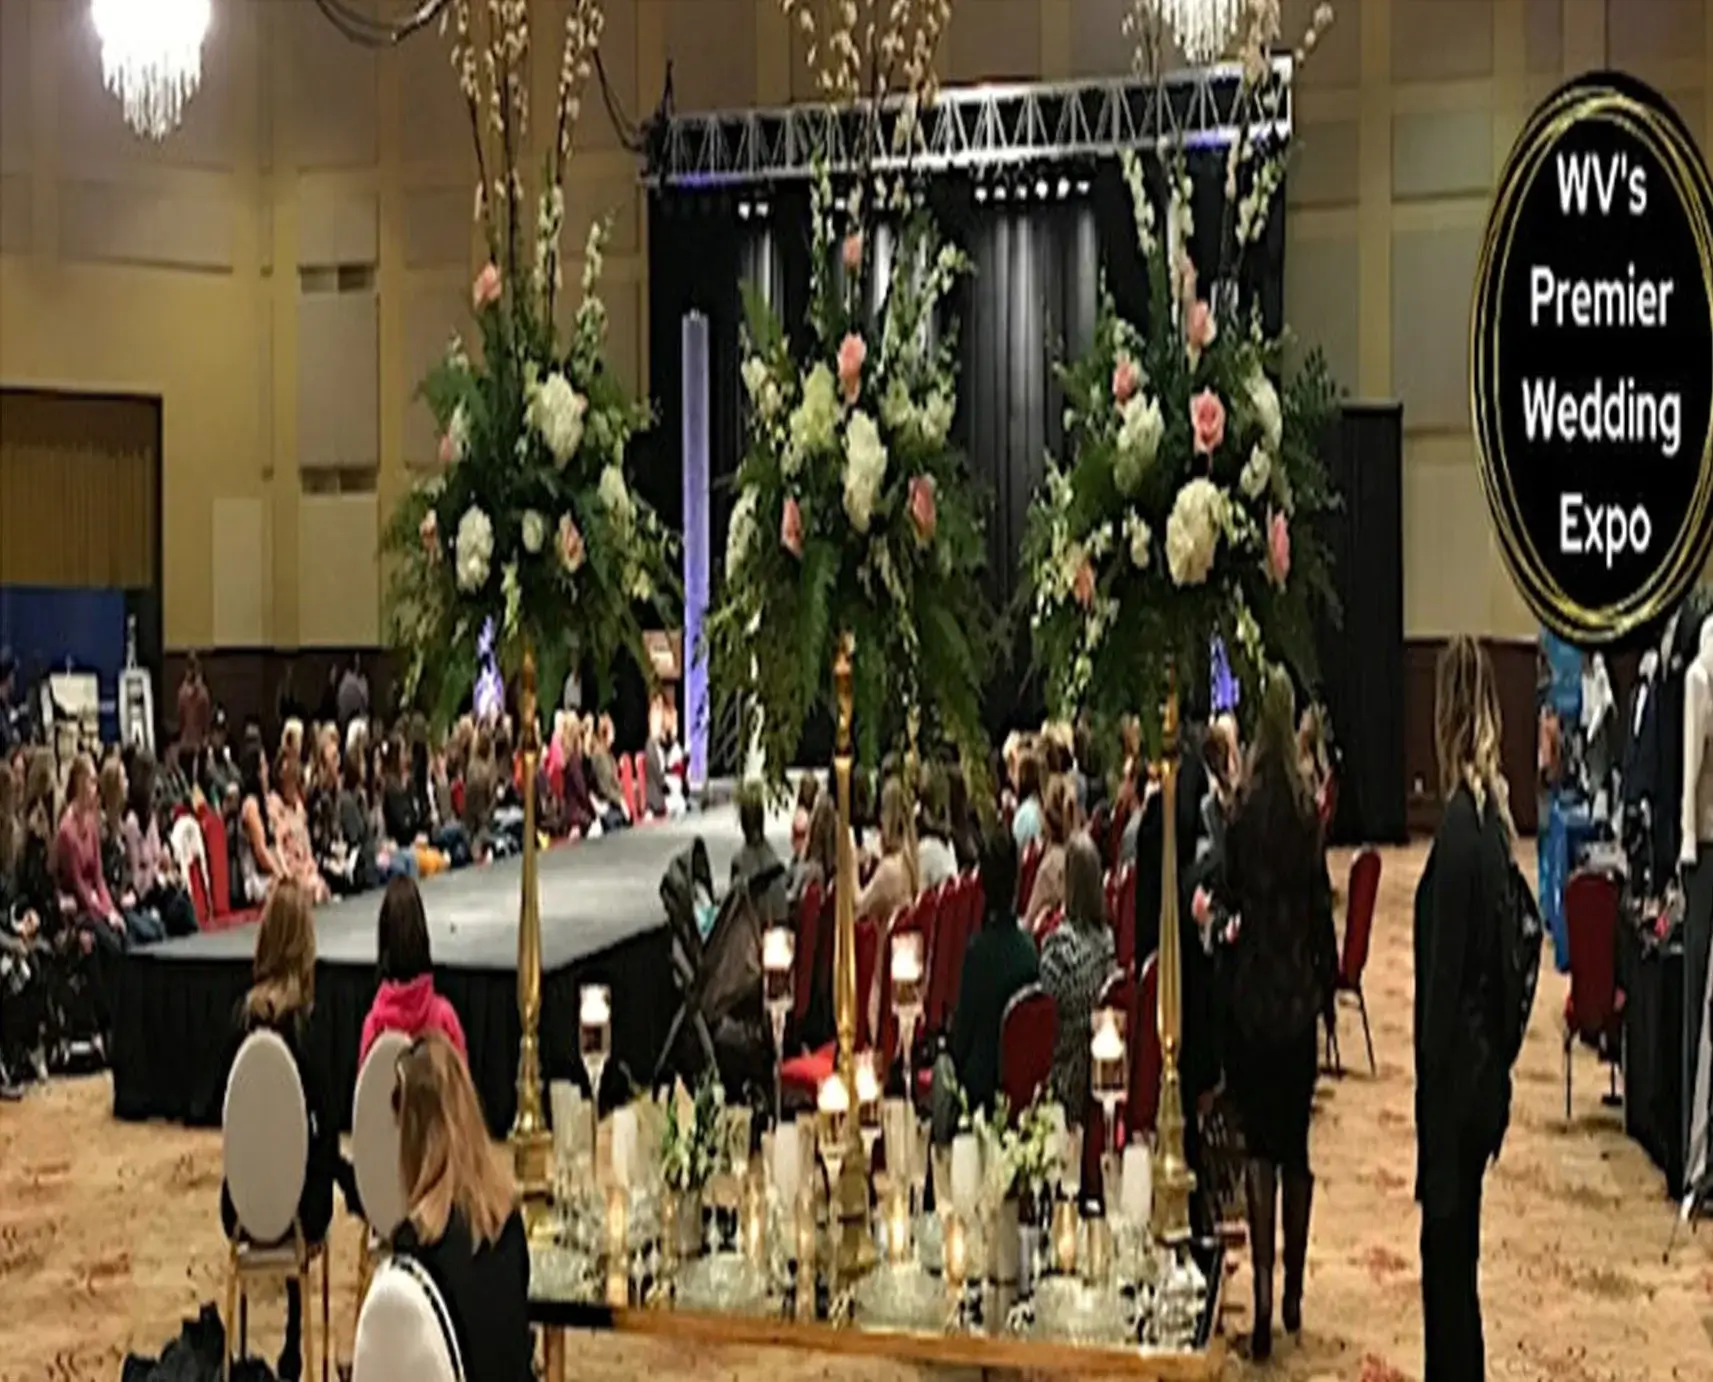 WV's Premier Wedding Expo | November 12, 2023